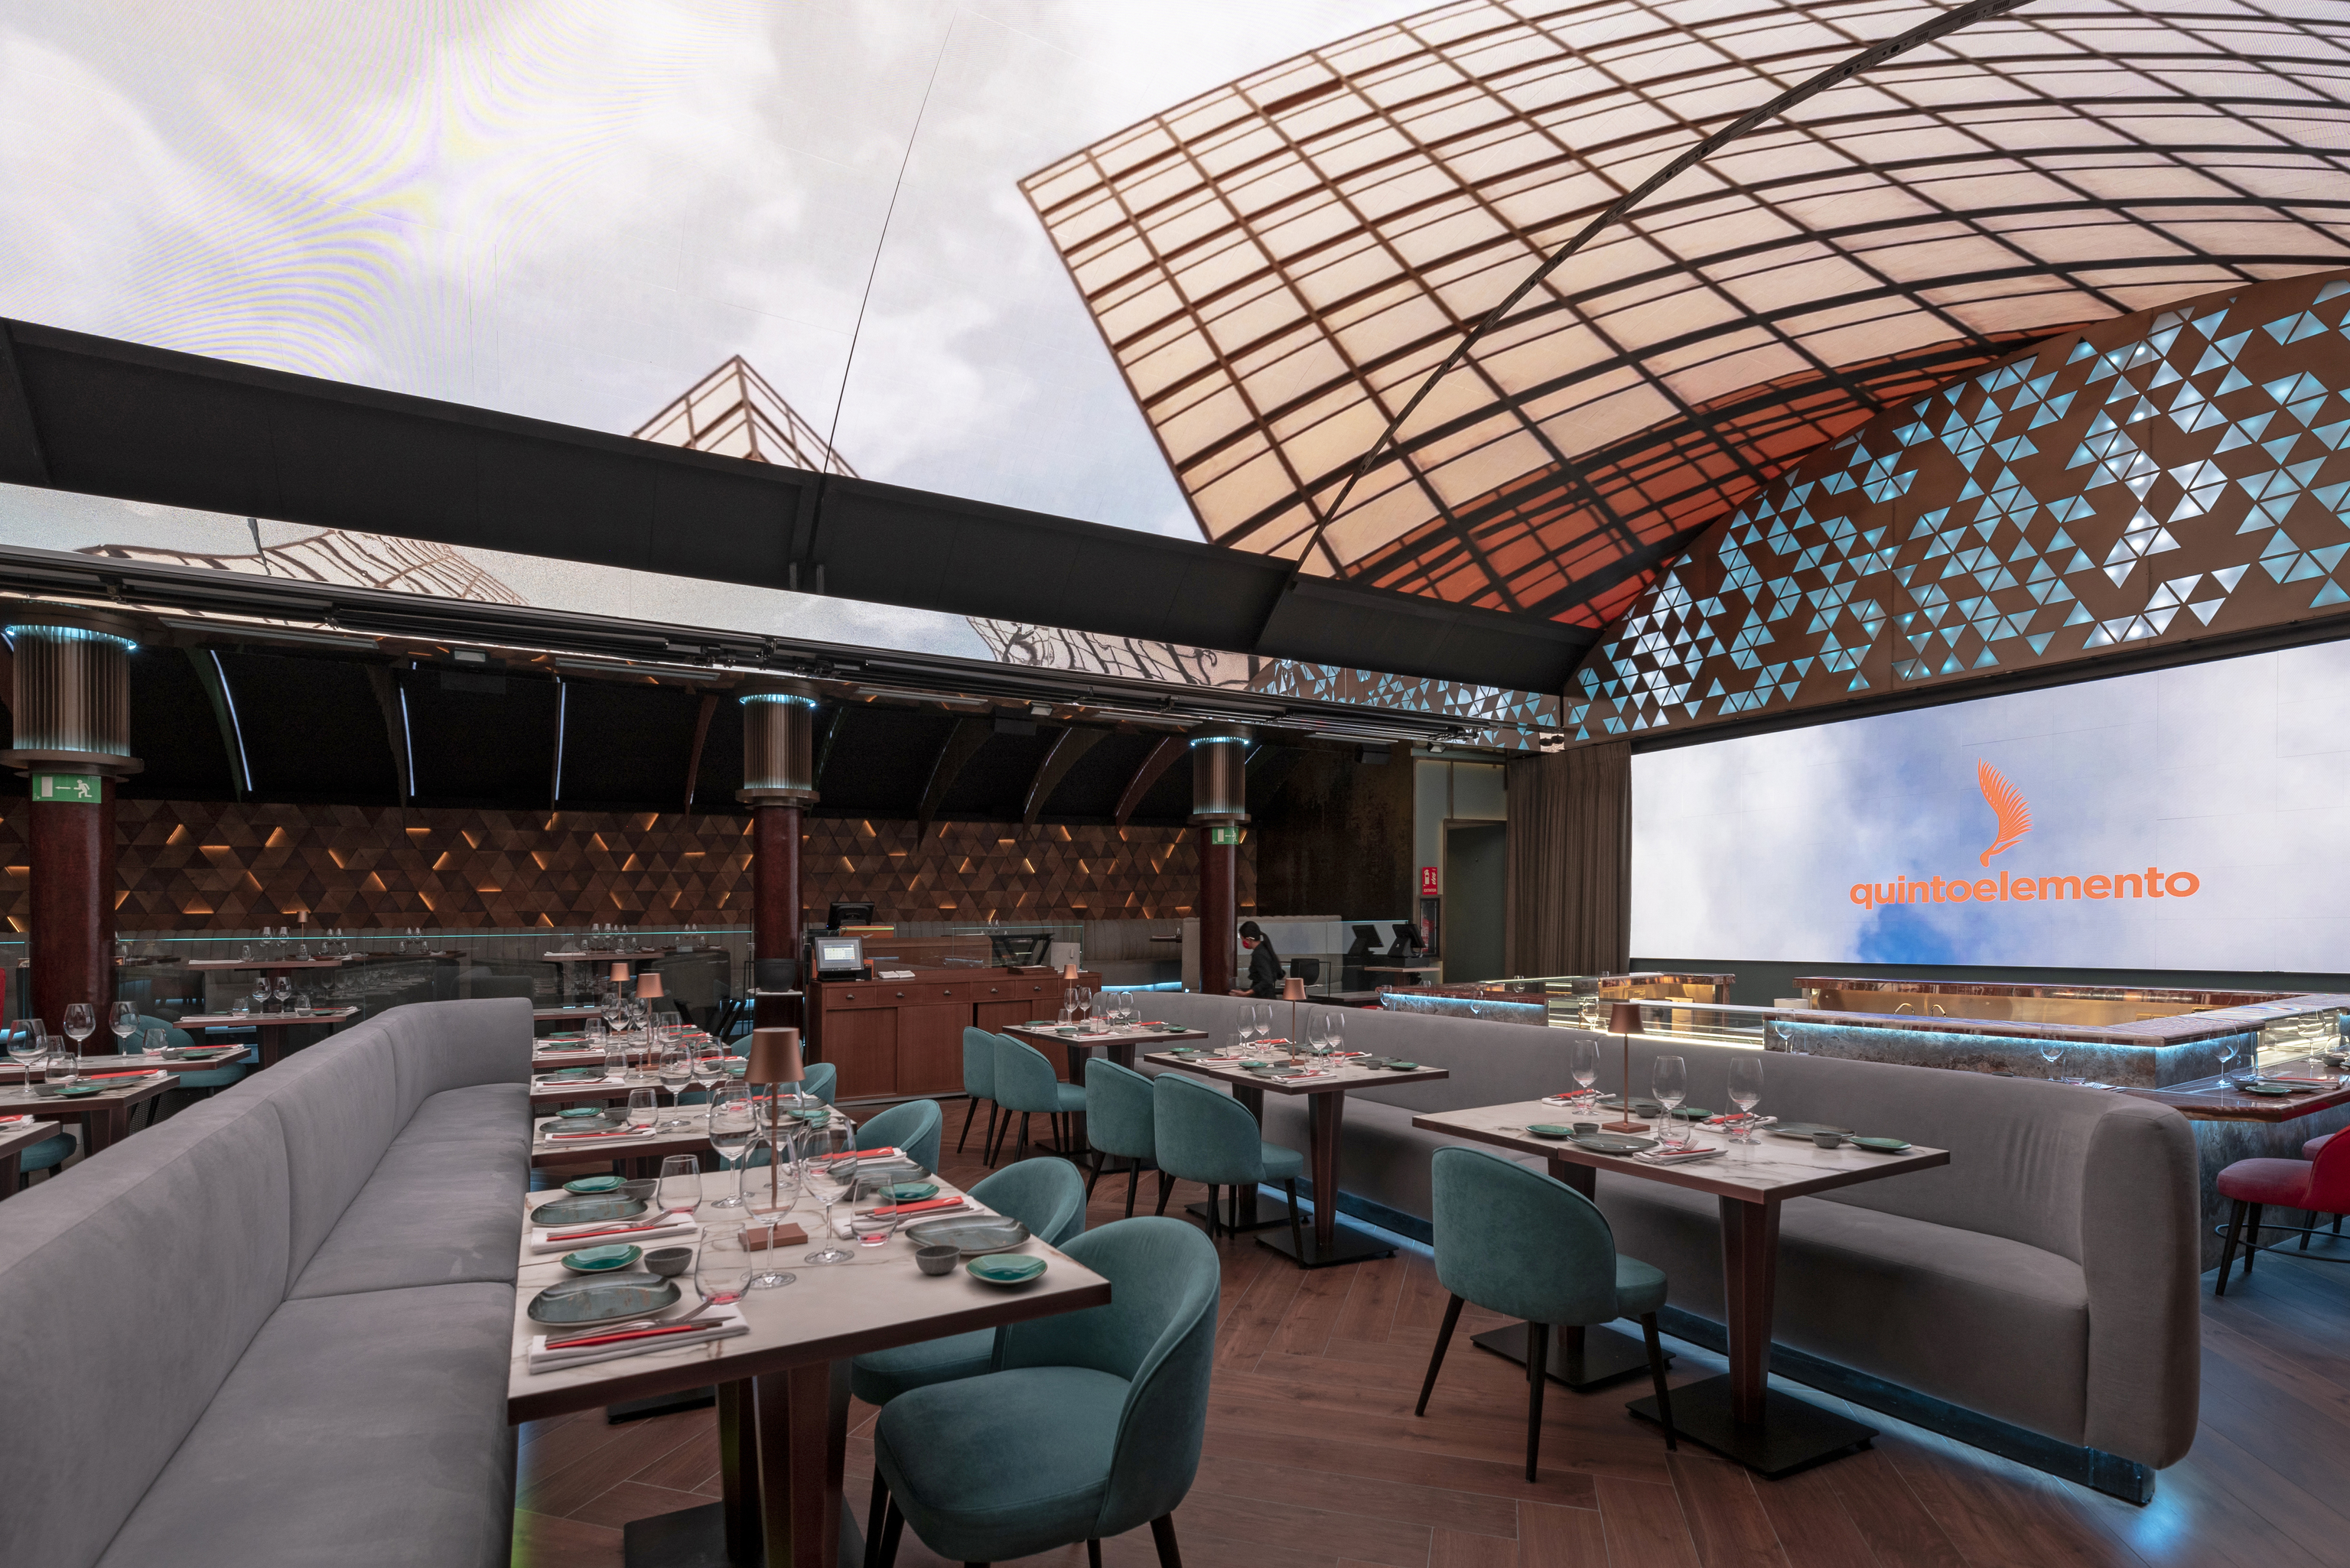 La cúpula del restaurante Quintoelemento puede abrirse para dejar la azotea al aire libre.